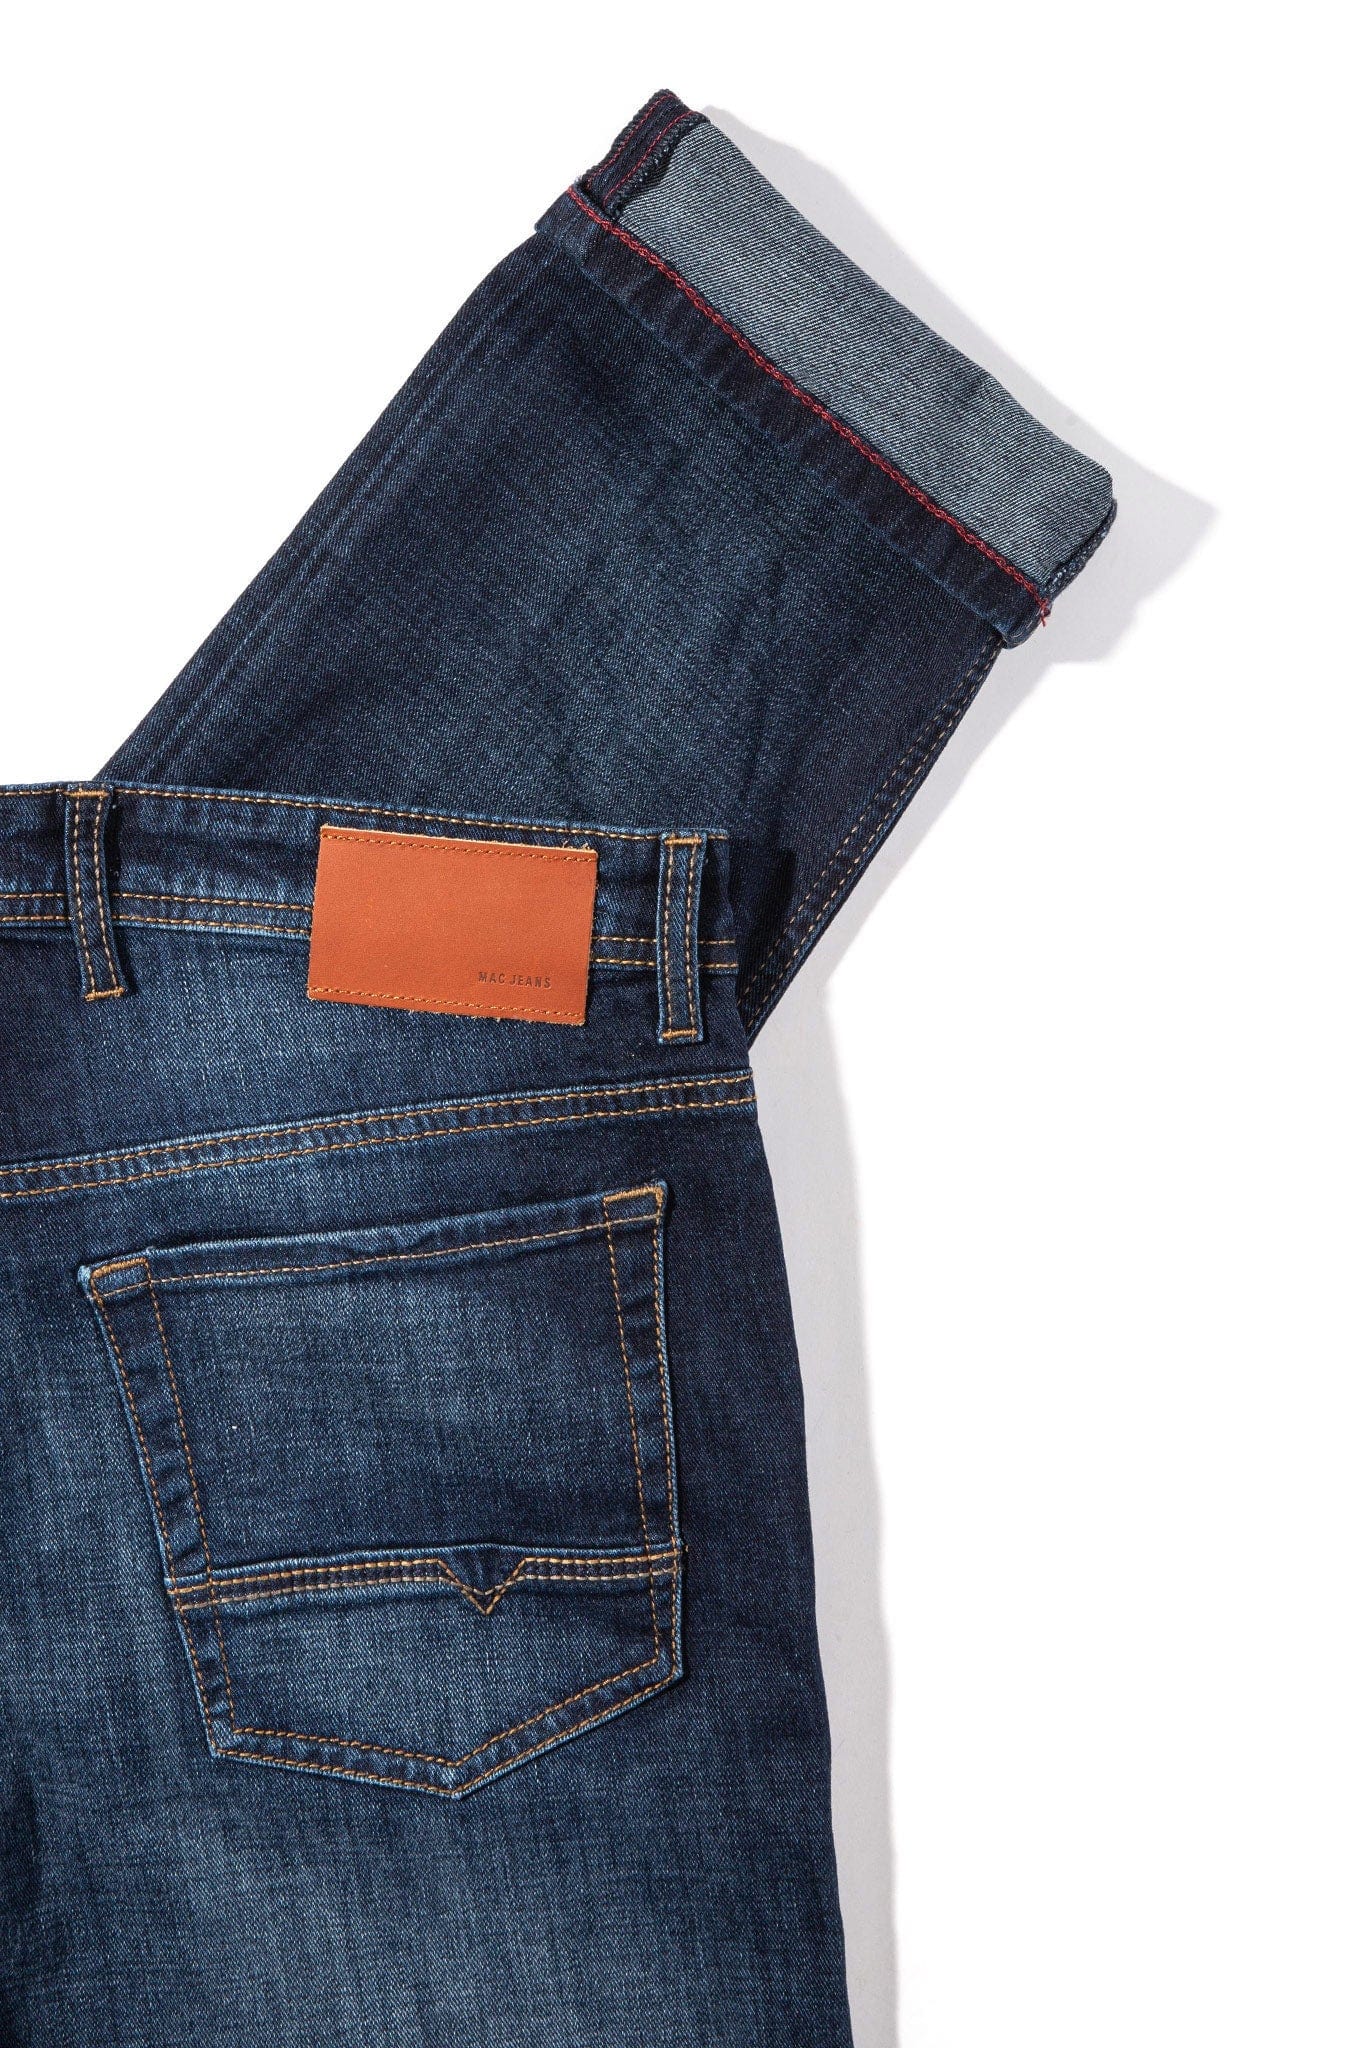 Mac Jeans MAC Arne Jeans in Dark Vintage Blue Mens - Pants - 5 Pocket